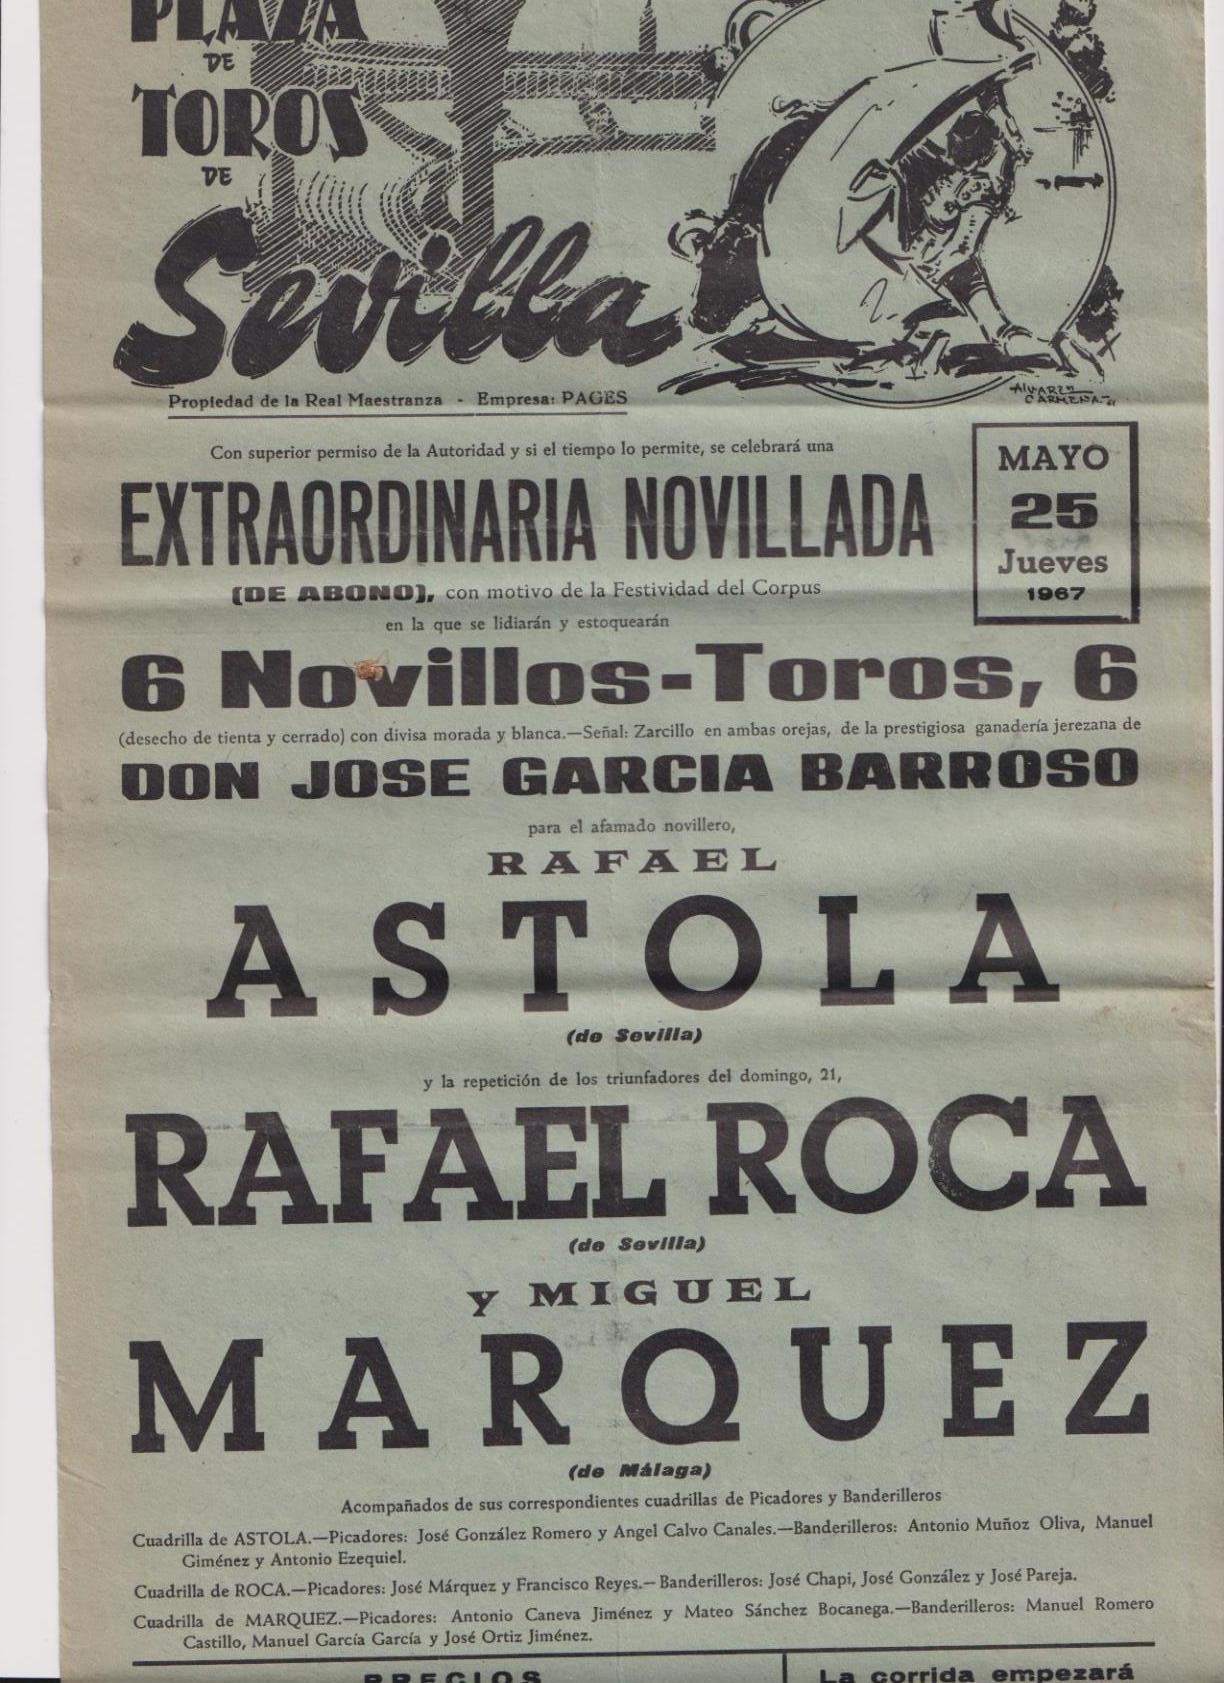 Cartel (45x21) Plaza de Toros de Sevilla 25 de Mayo de 1967. Extraordinaria Novillada